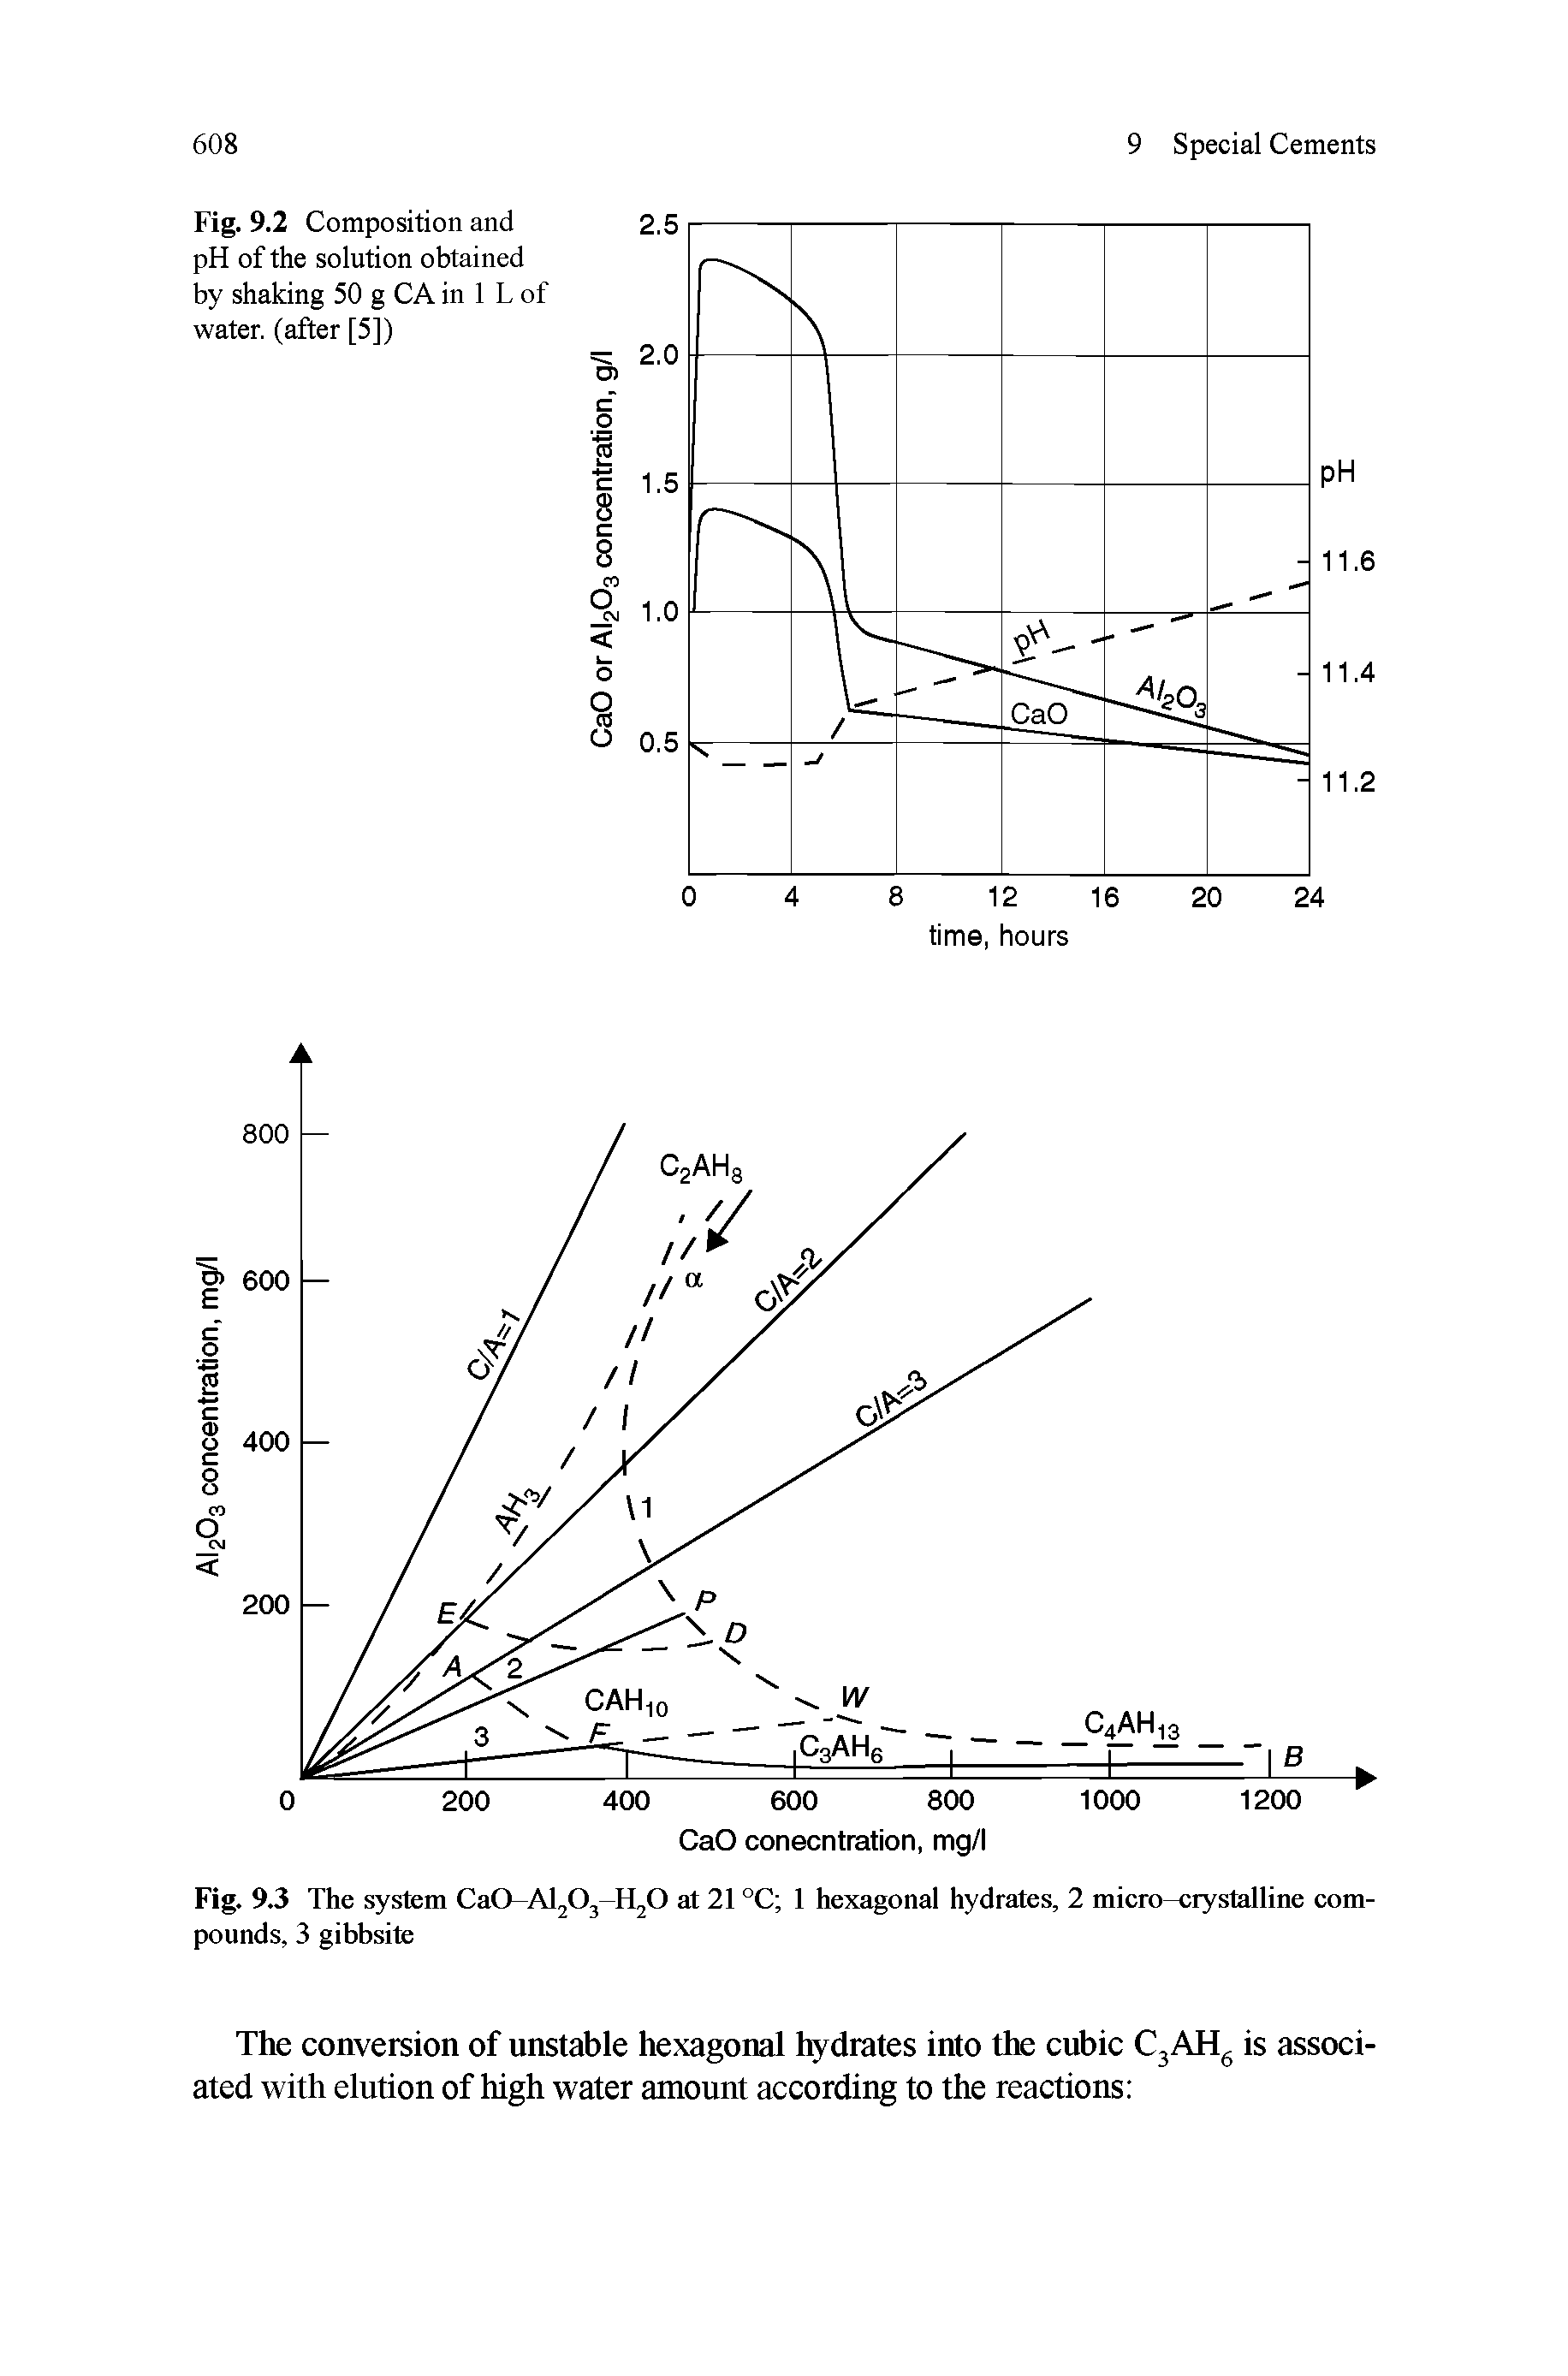 Fig. 9.3 The system CaO-AijOjU O at 2i °C i hexagonal hydrates, 2 miero-crystalline eom-pounds, 3 gibbsite...